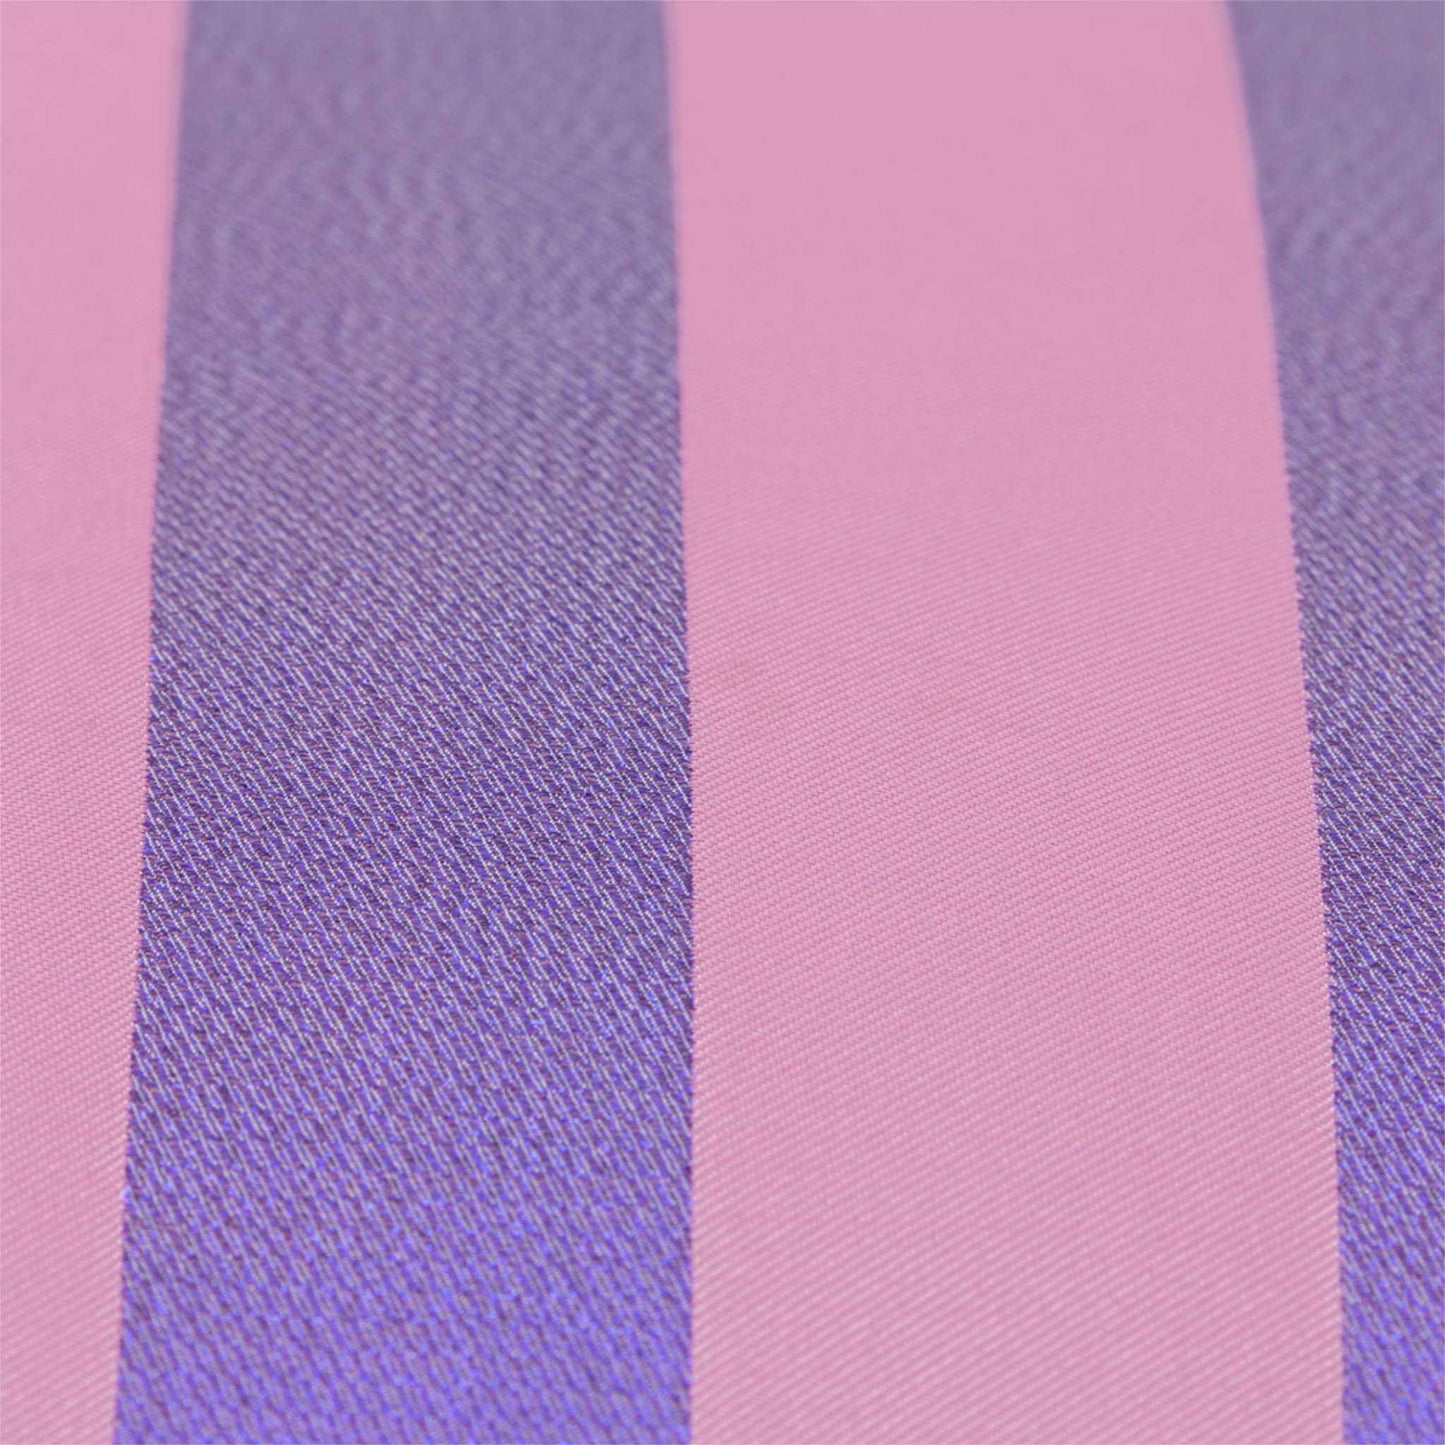 Shopper net fra Dagny i lyserød med brede striber i blå lurex (detalje)